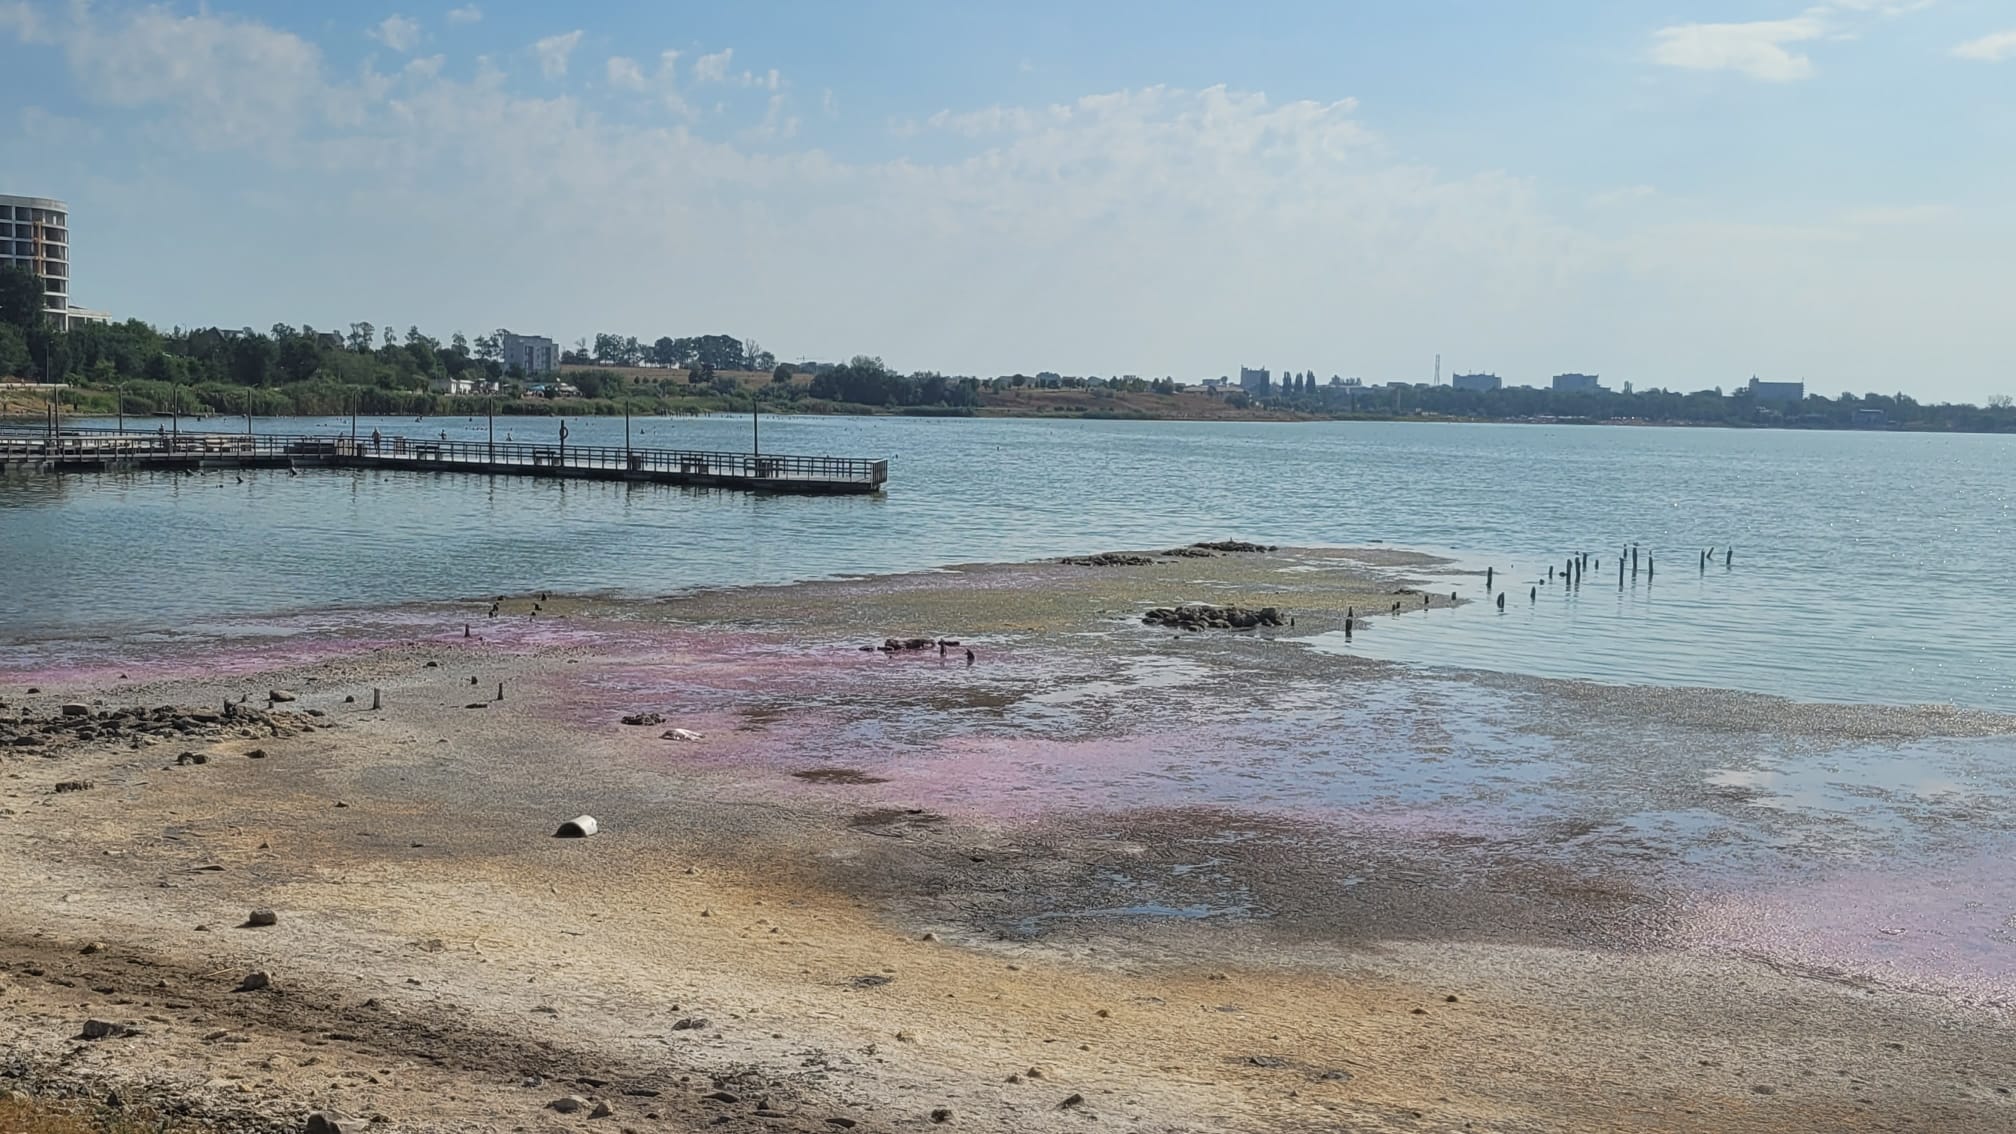 Lacul Techirghiol s-a colorat în nuanțe de roz și violet. Care este explicația